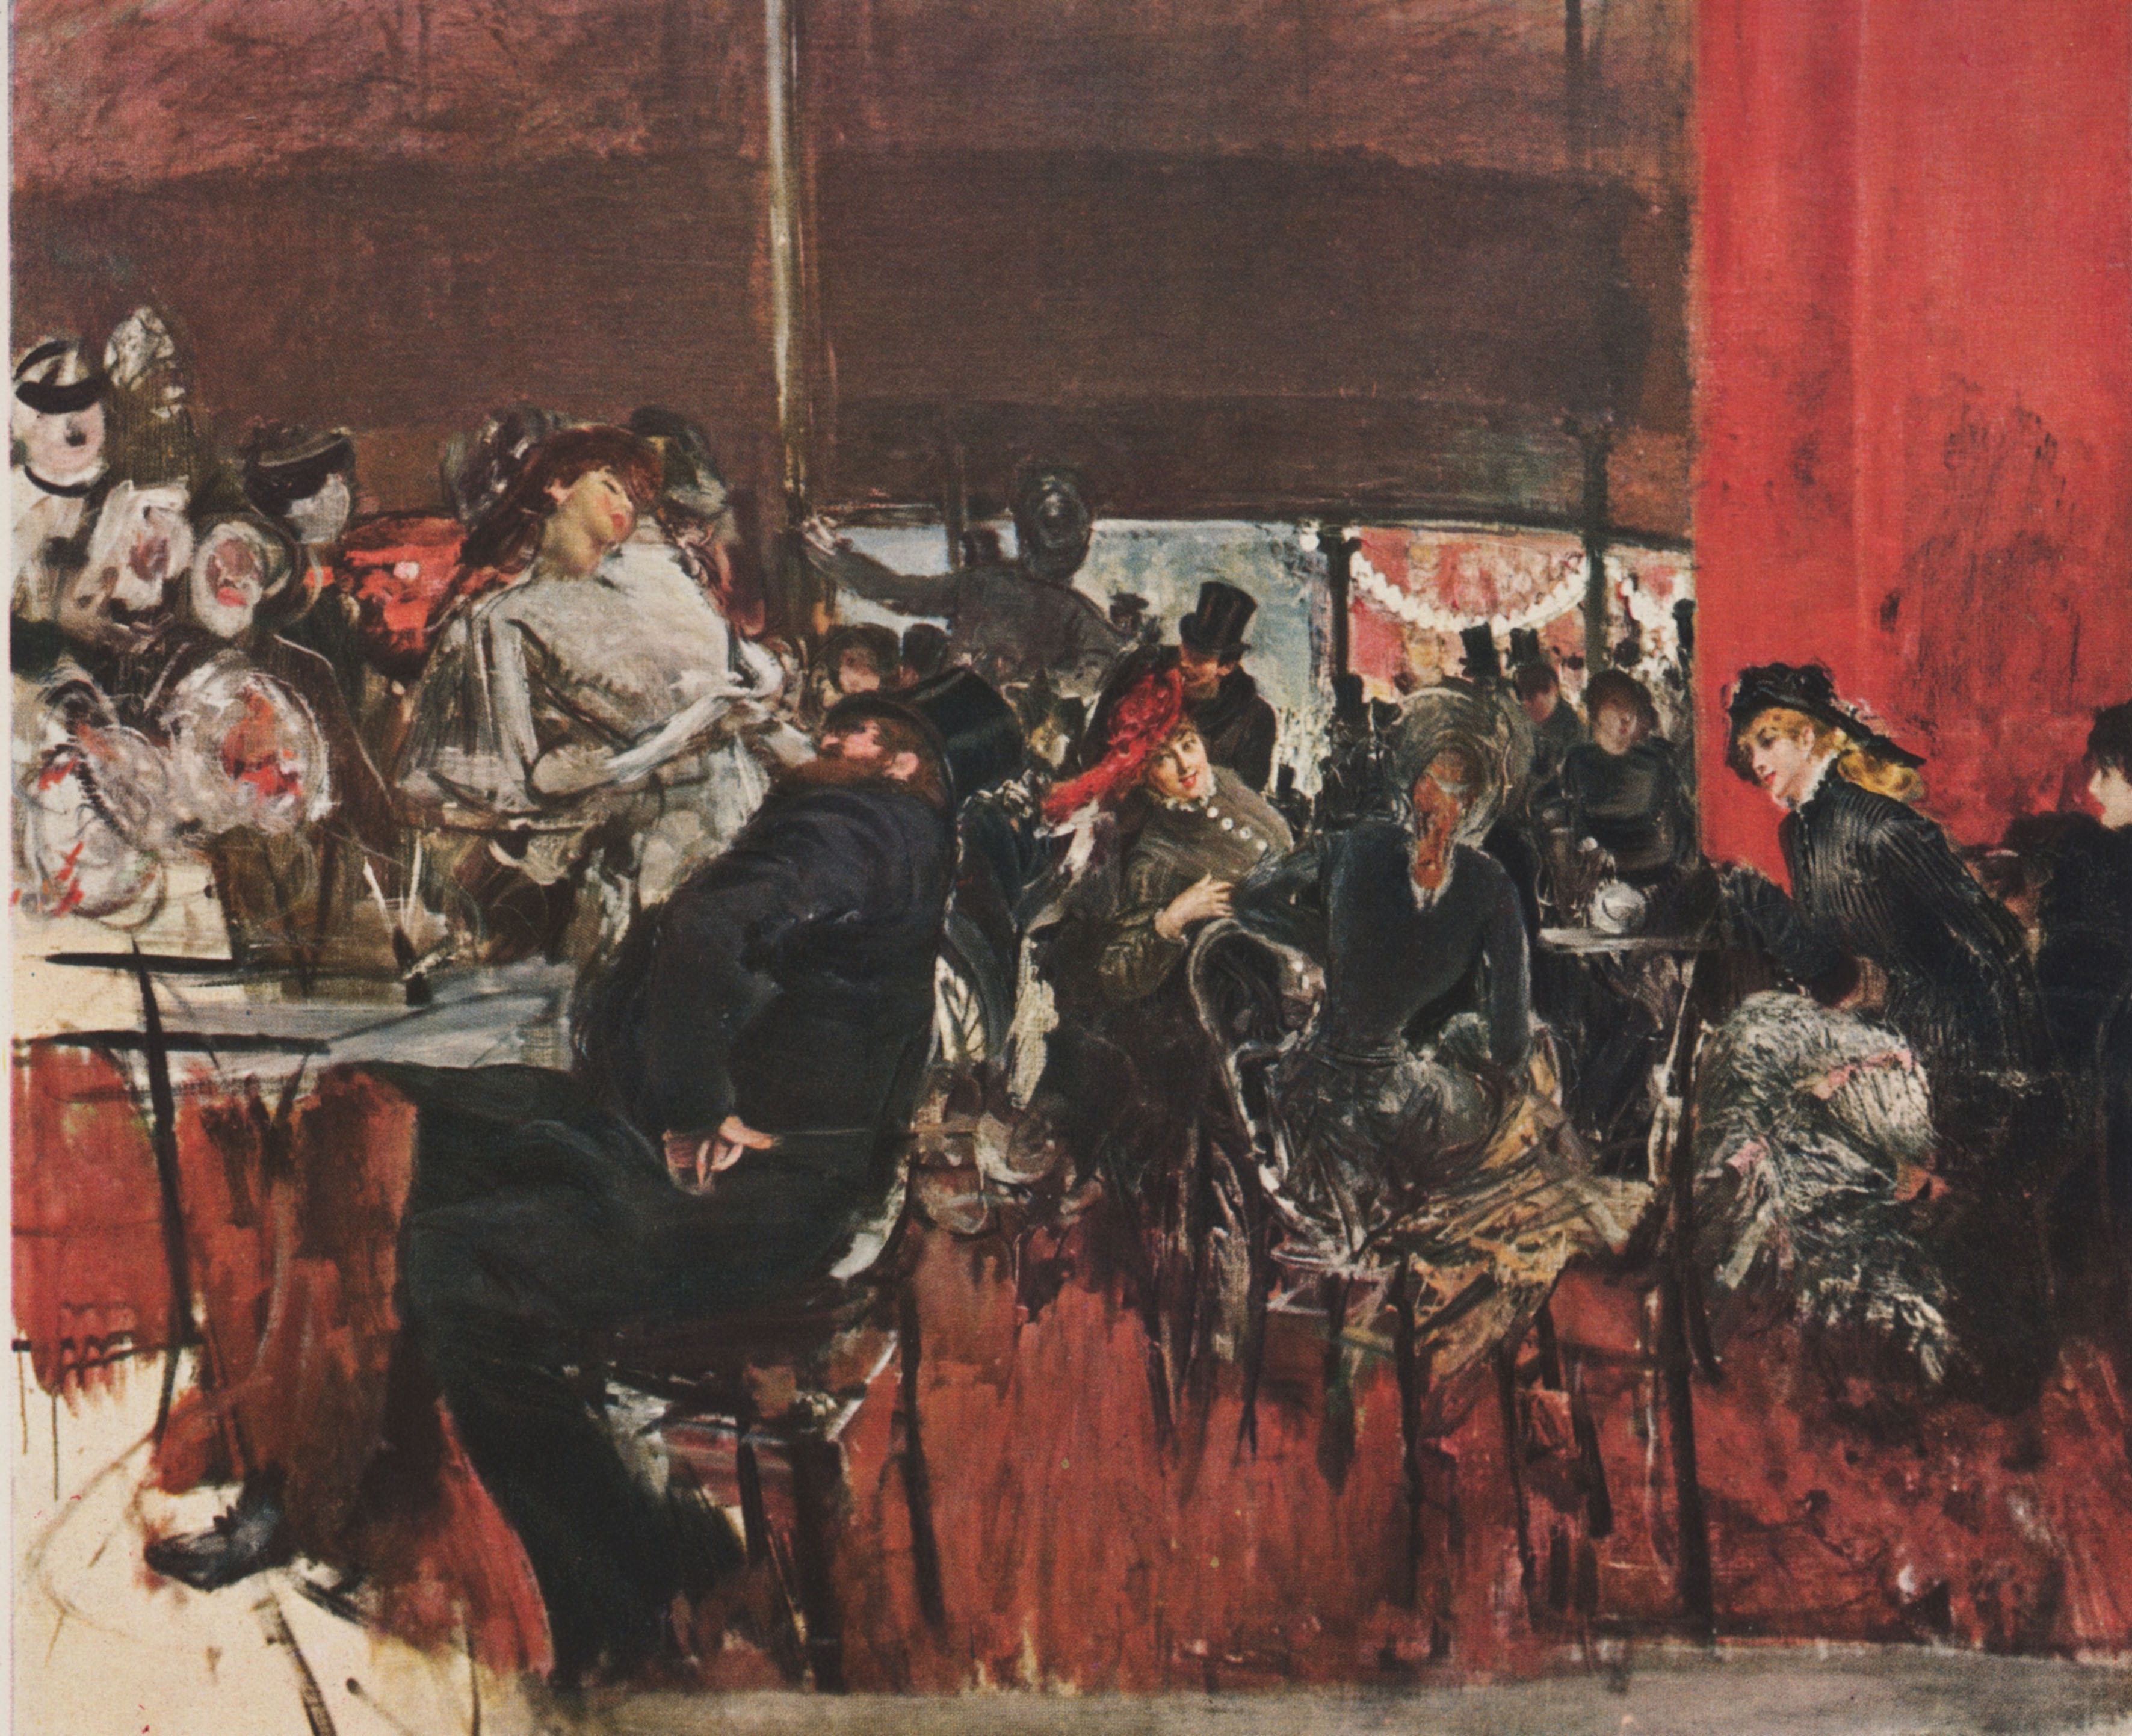 Interno del Caffè Rosso, non datato (1887), olio su tela cm 113 x 125, collezione privata, Roma. Credito: Archivio GBB / CONTRASTO